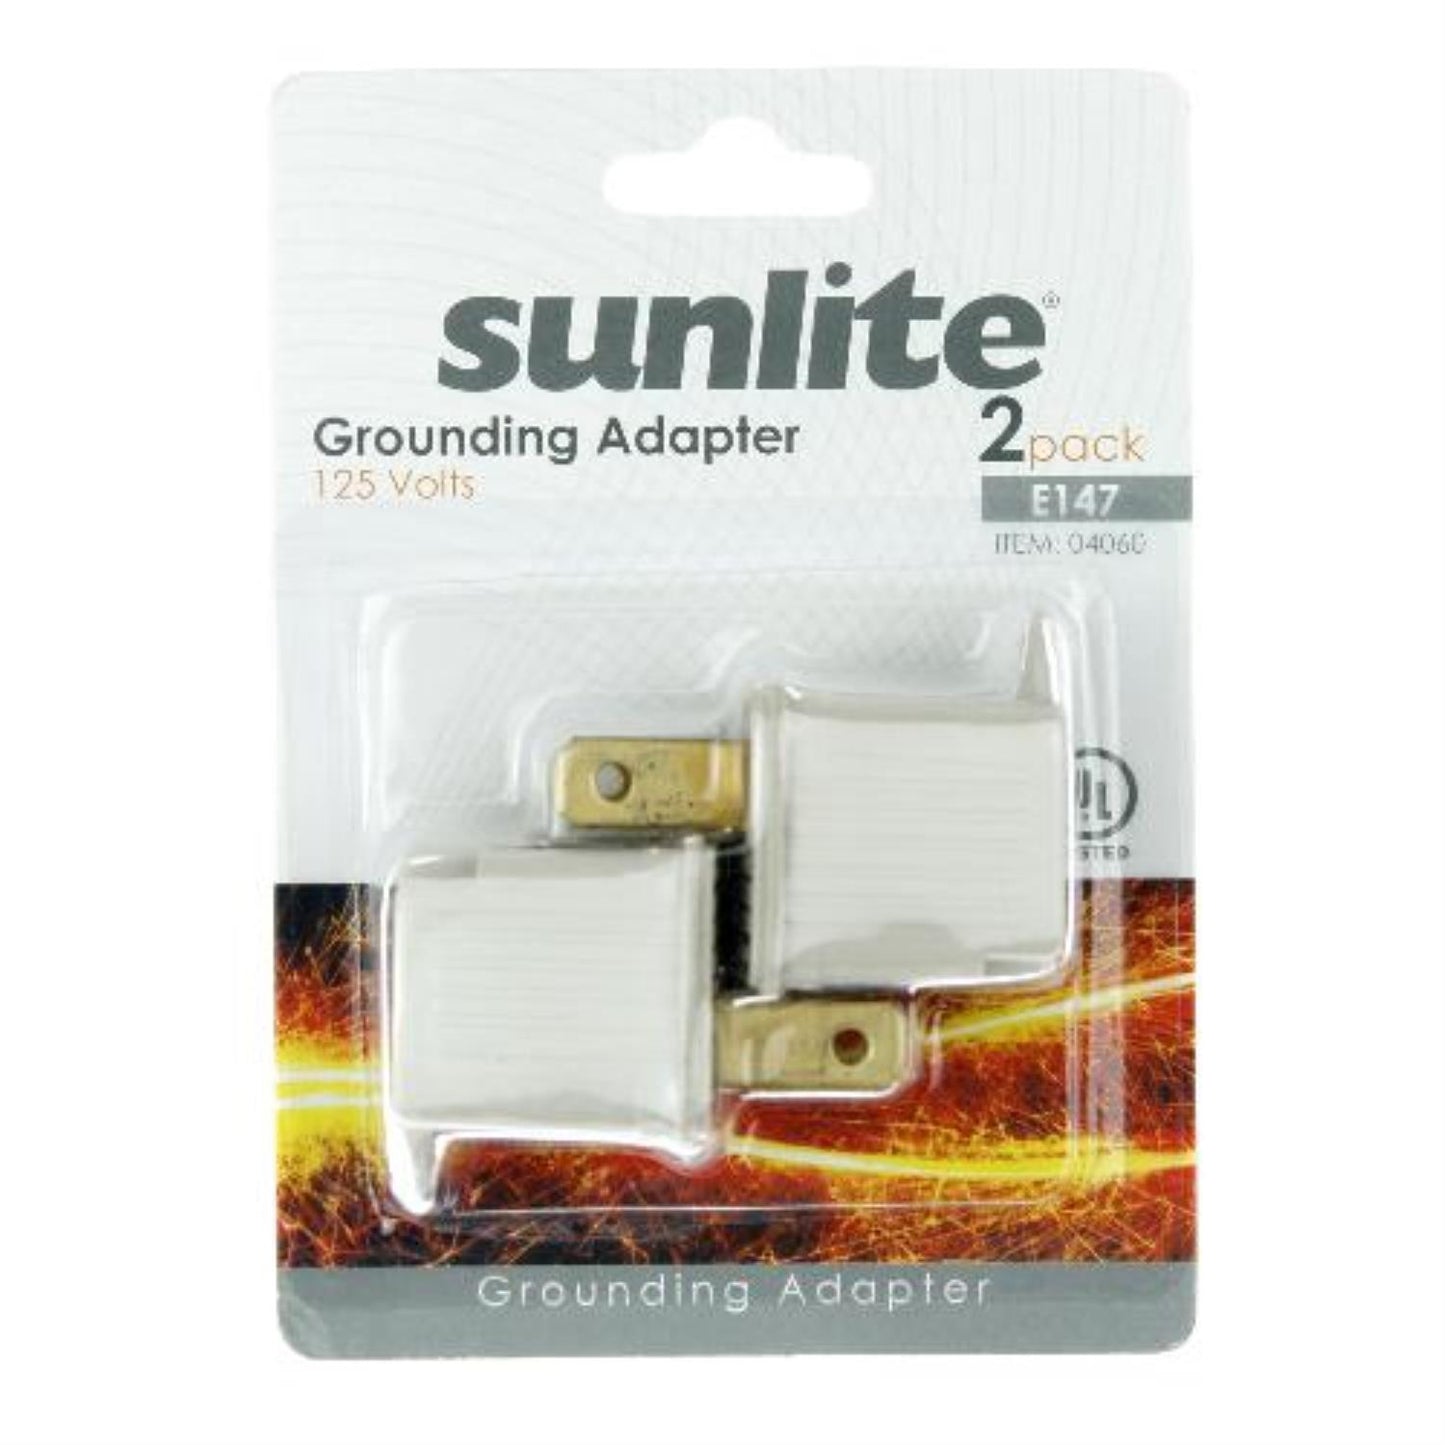 Sunlite E147/CD2 Grounding Adapter, 2 Pack